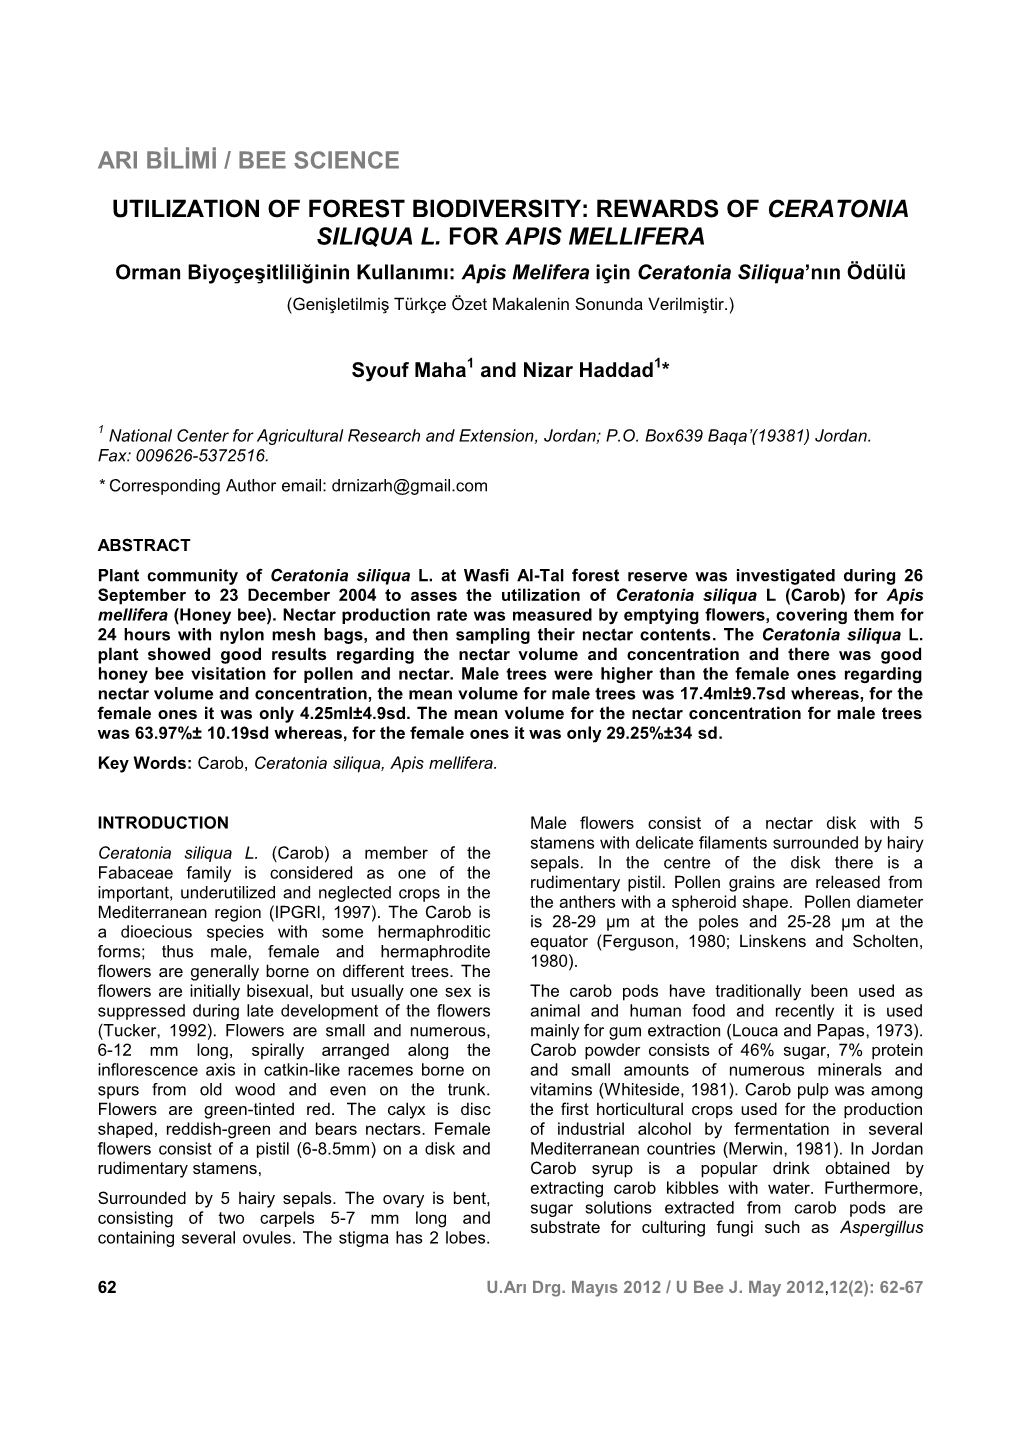 Rewards of Ceratonia Siliqua L. for Apis Mellifera